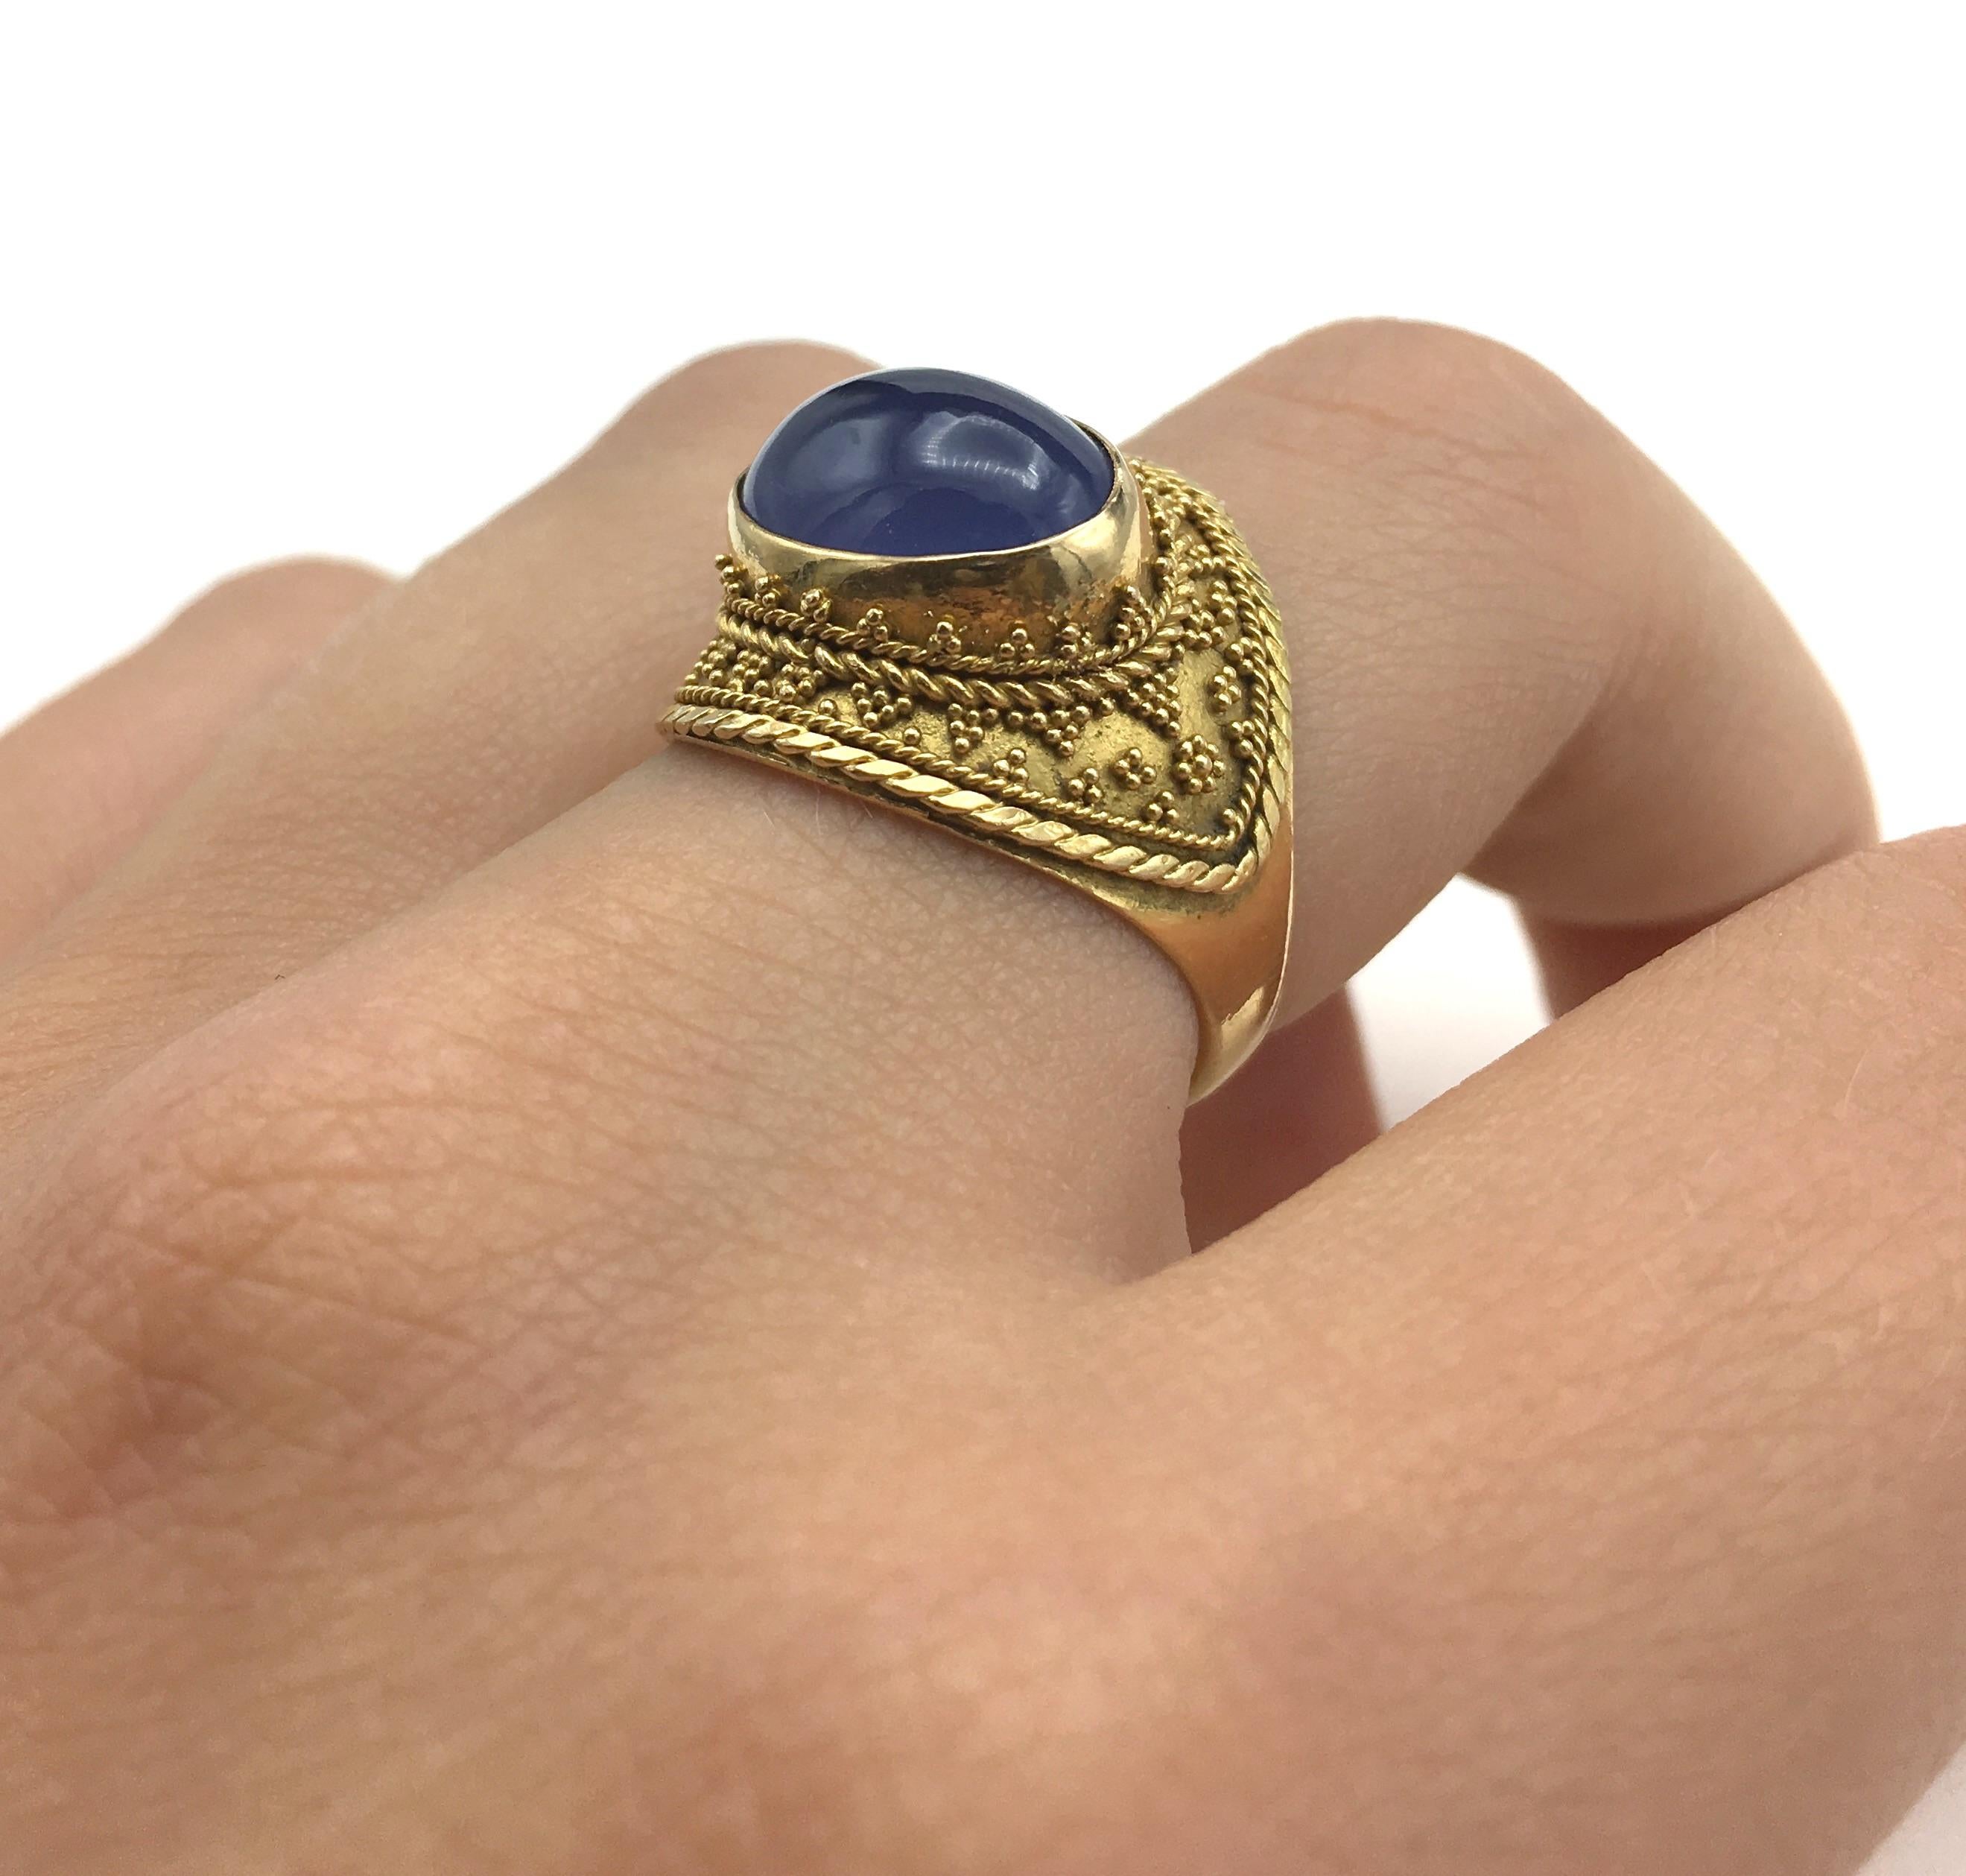 22 Karat Gold Granular Design Blue Chalcedony Ring For Sale 1